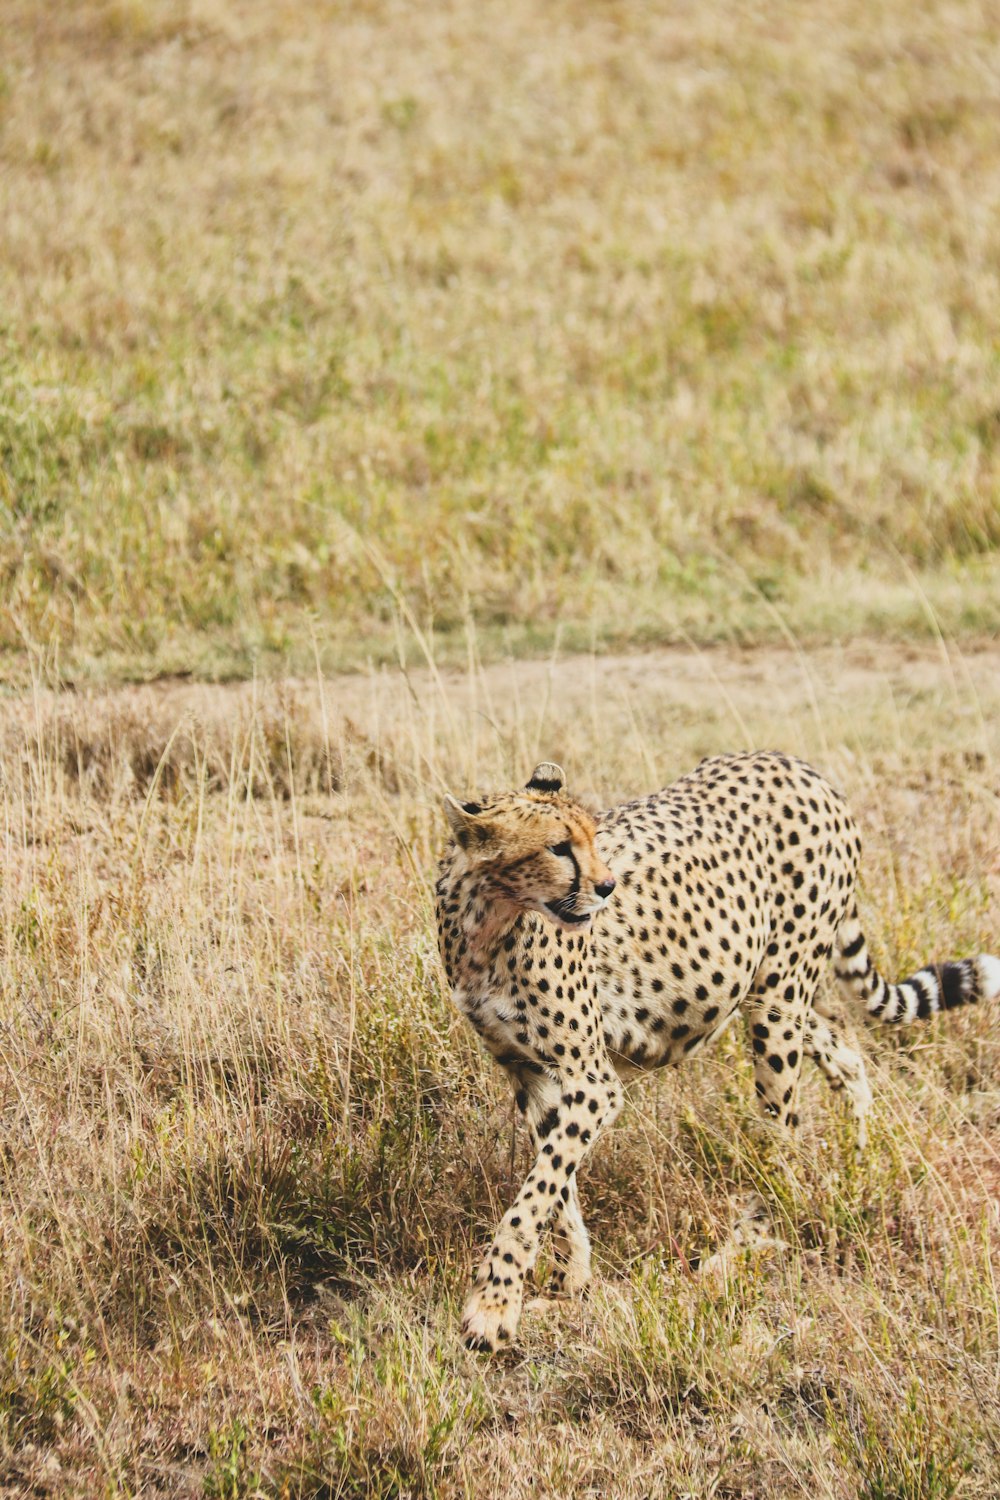 a cheetah walking through a dry grass field